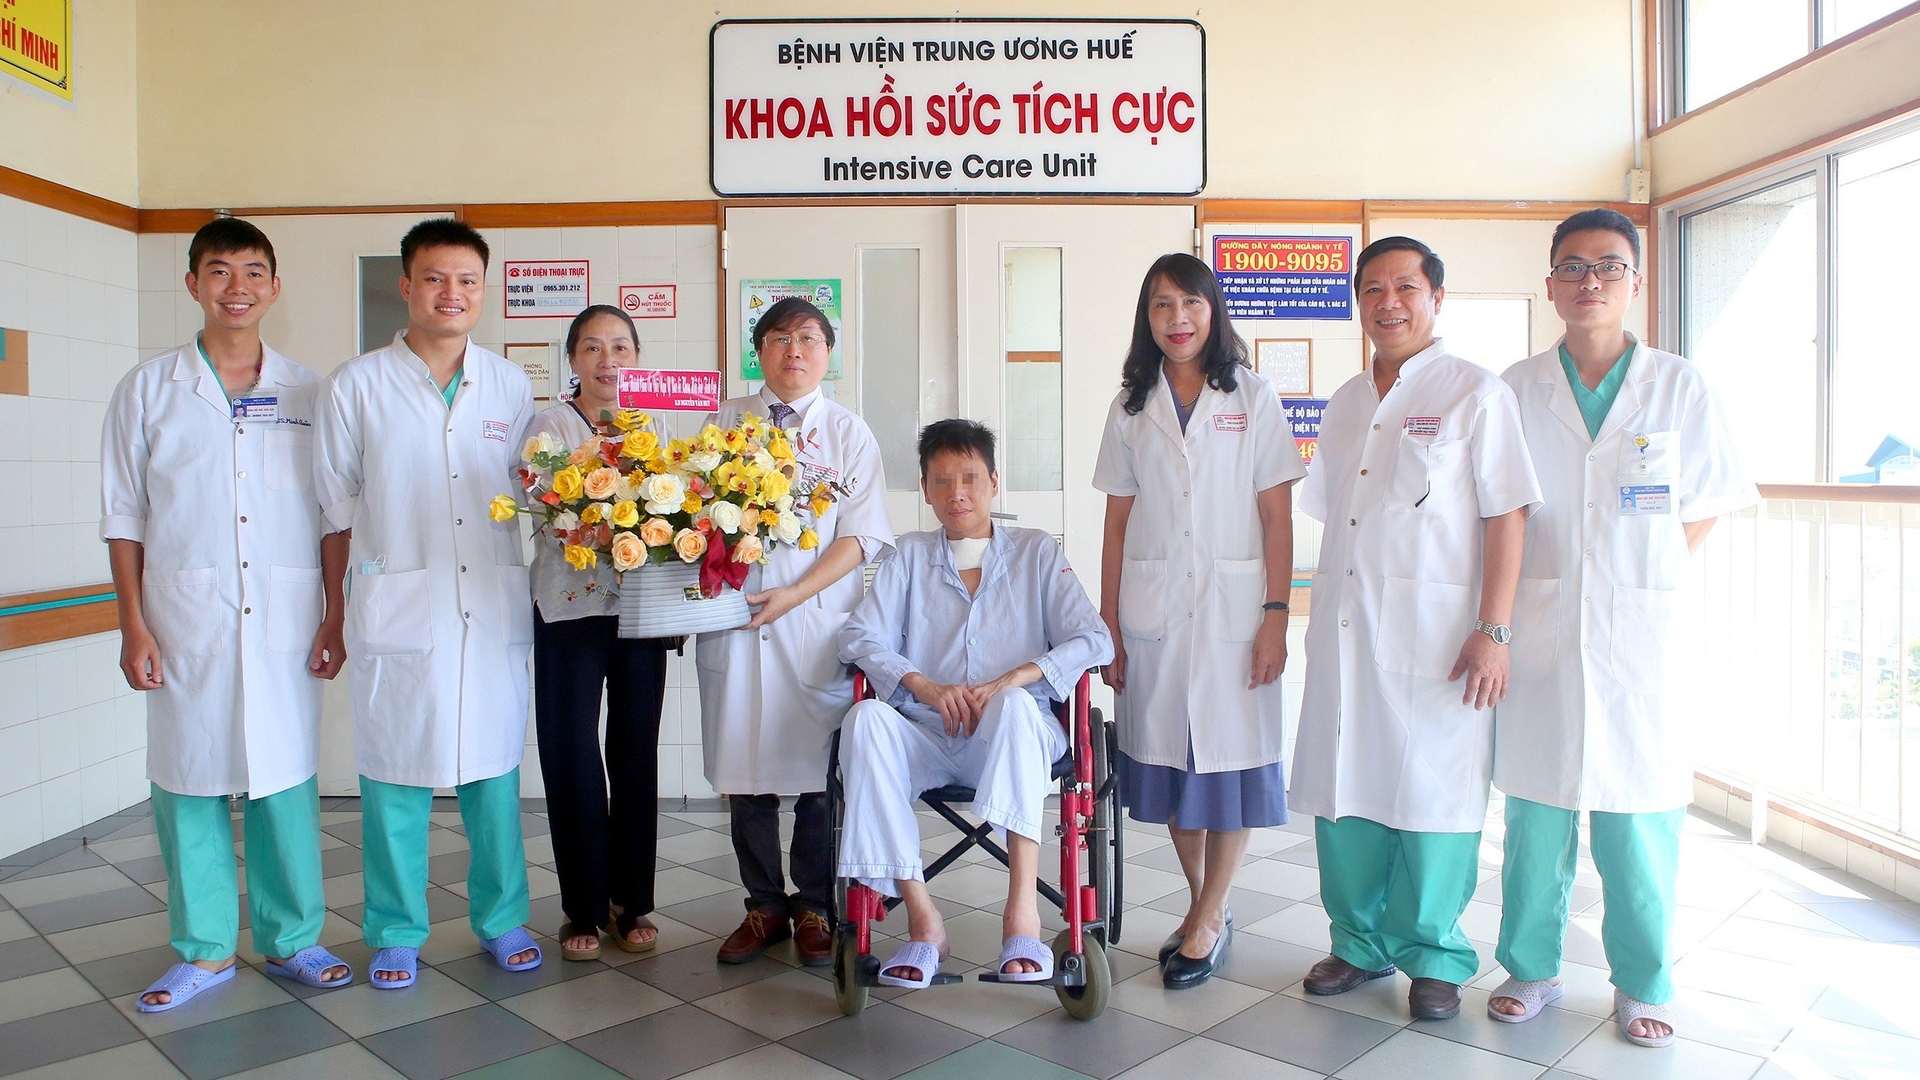 Bệnh nhân Nguyễn Văn D. được xuất viện sau 2 tháng điều trị. Ảnh: BVH.